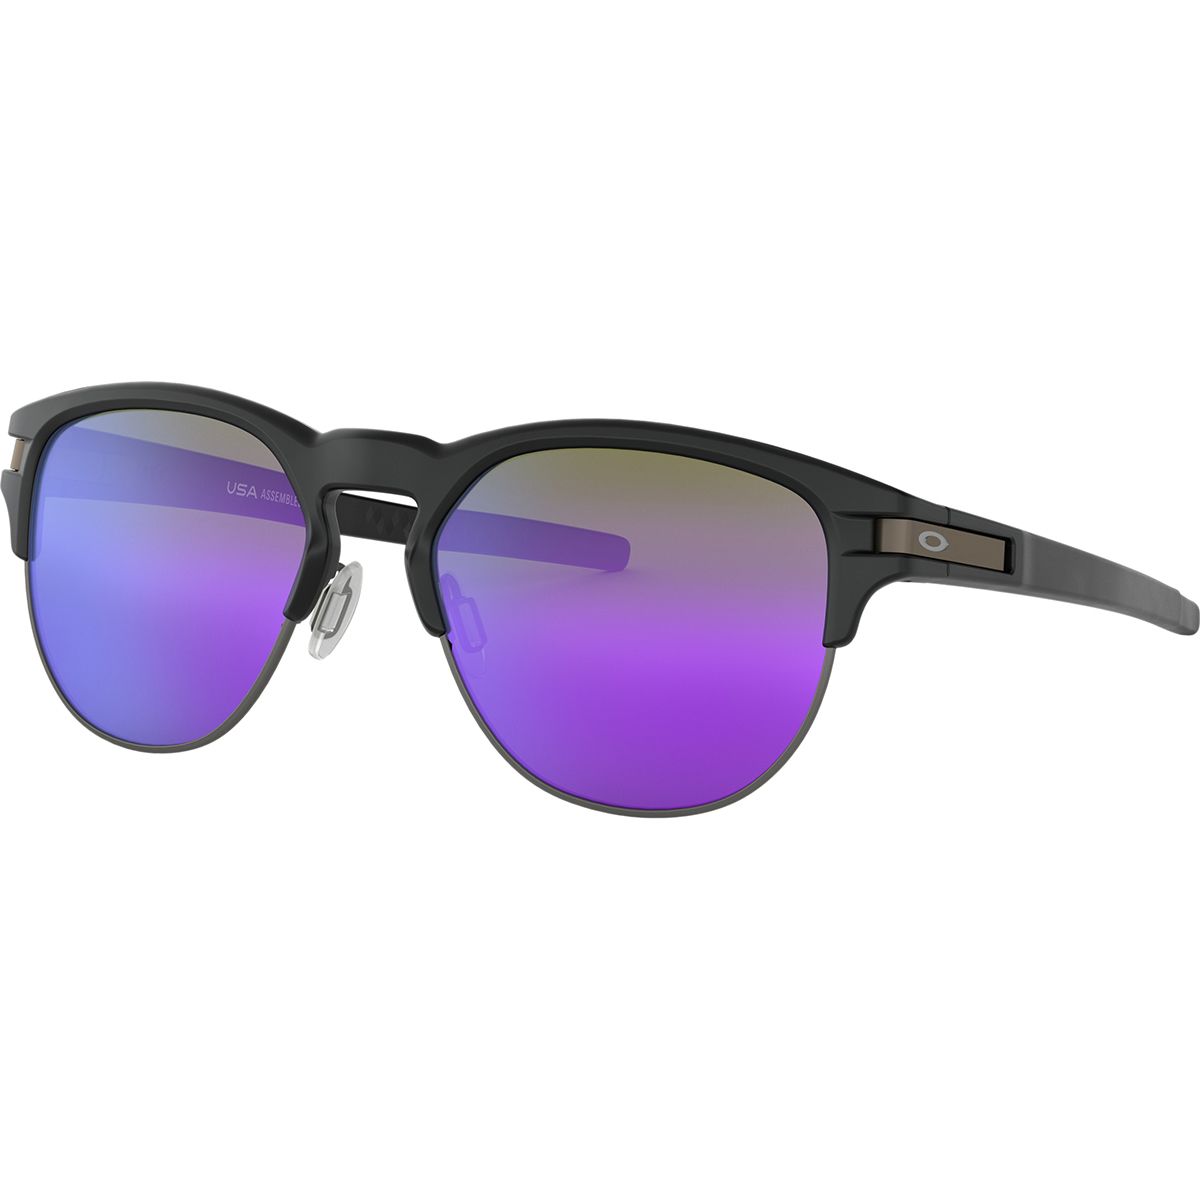 Oakley Latch Key L Sunglasses - Men's